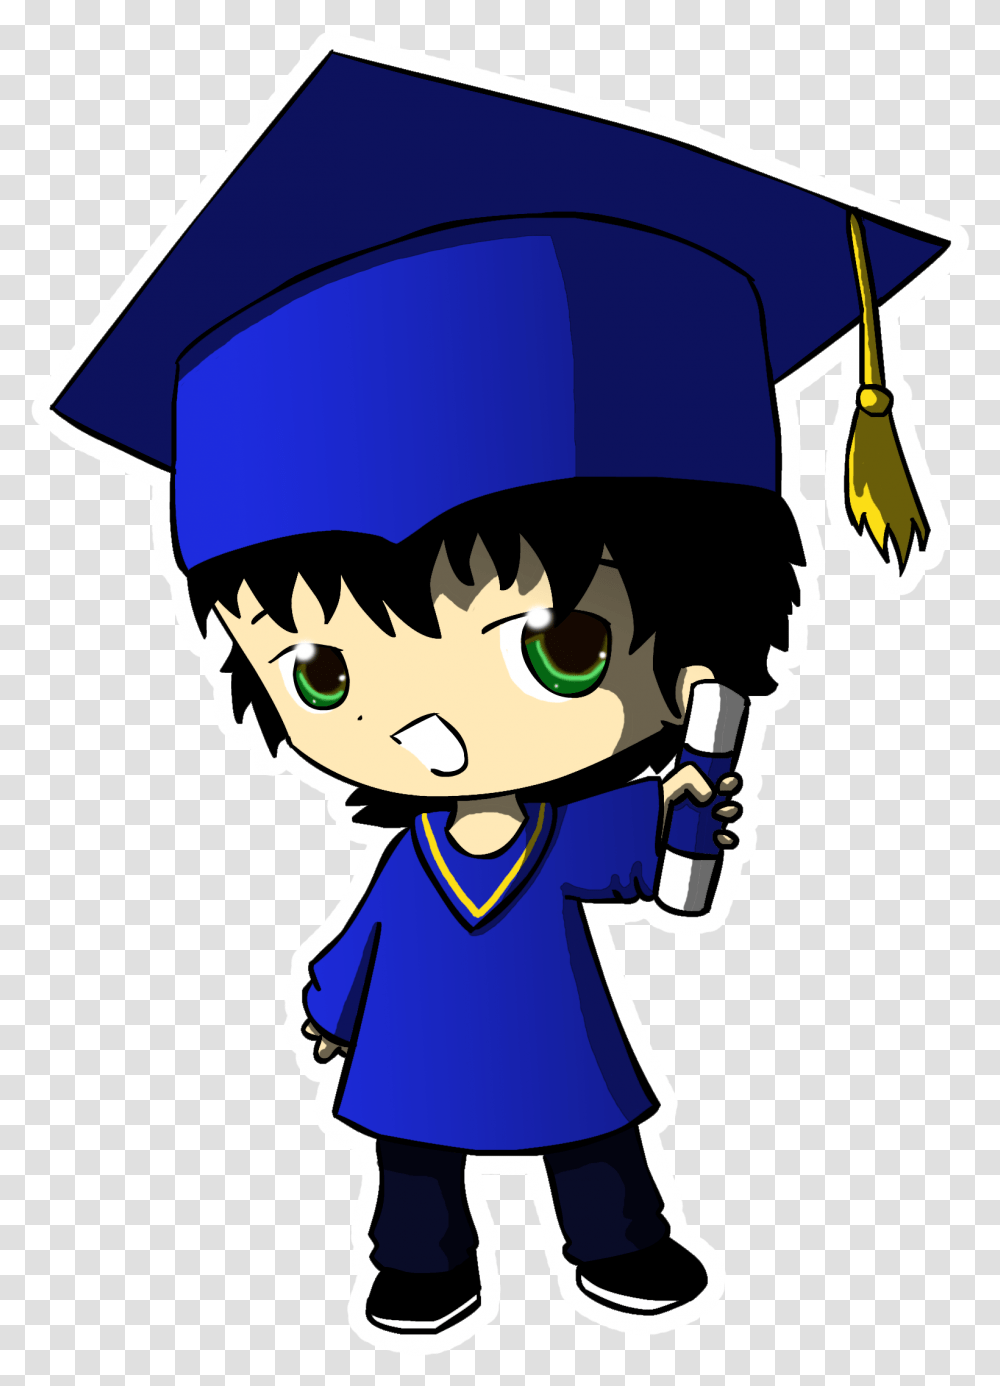 Graduation Logos Images Graduation Anime, Person, Parade, Sailor Suit, Costume Transparent Png